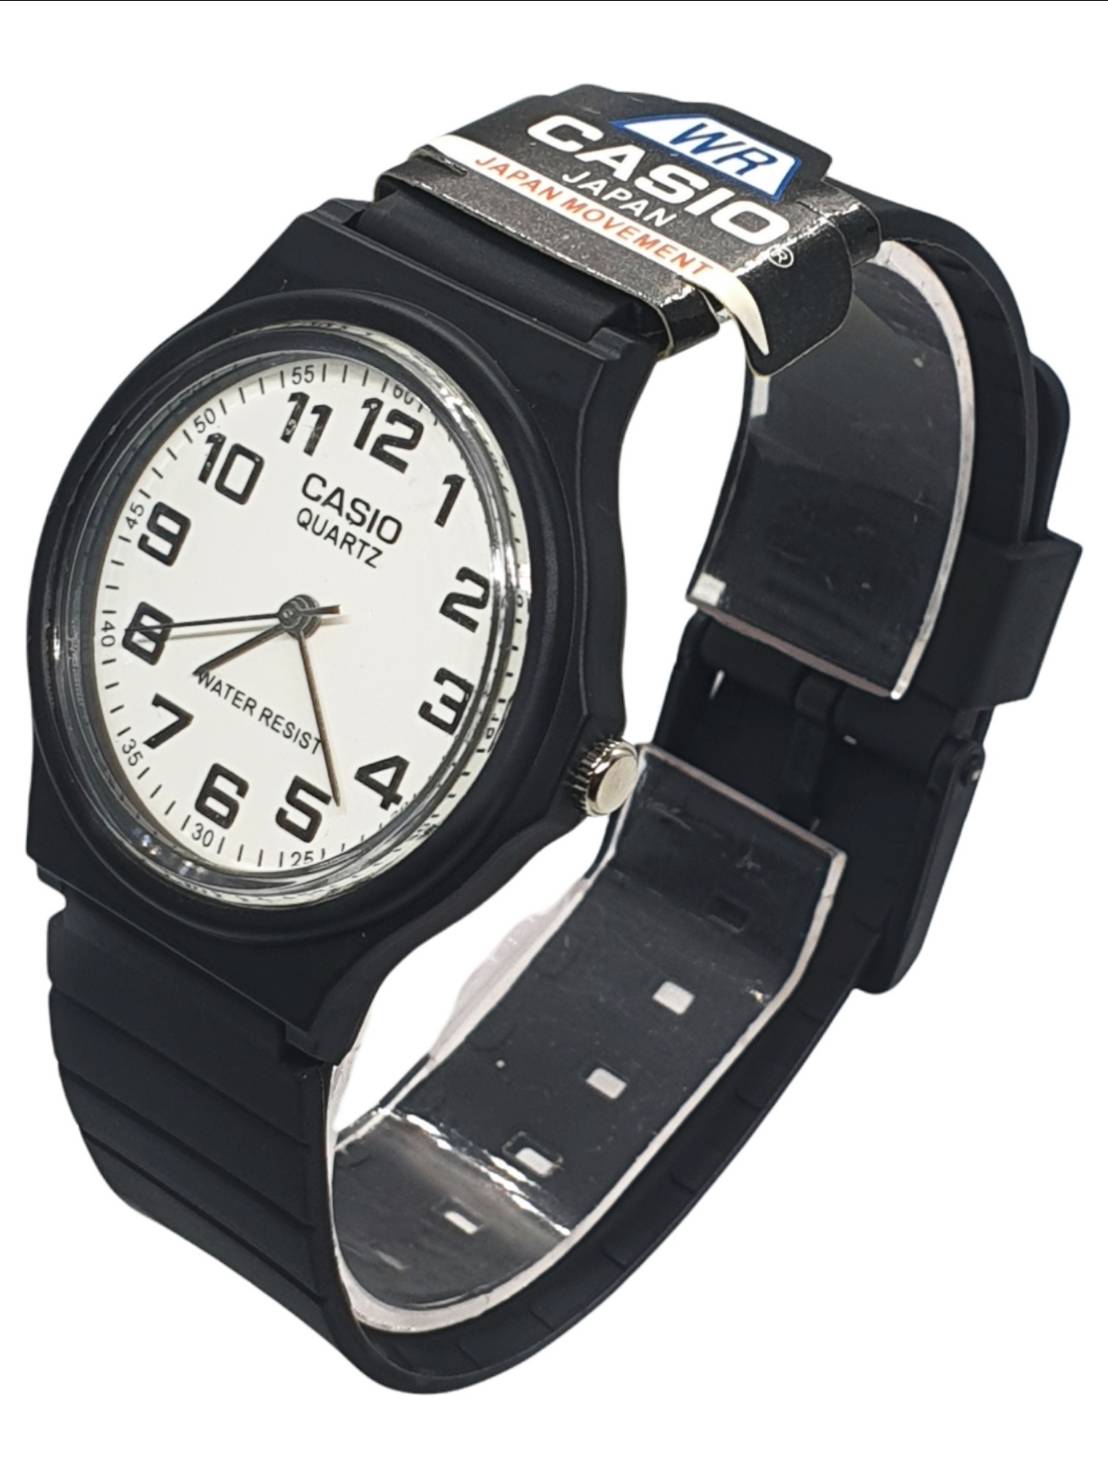 มุมมองเพิ่มเติมของสินค้า (กันน้ำ) นาฬิกาcasio พร้อมกล่อง นาฬิกาข้อมือผู้ชาย casio สายยาง สีดำ นาฬิกาผู้ชาย นาฬิกาคาสิโอ้ นาฬิกาเด็กโต RC537